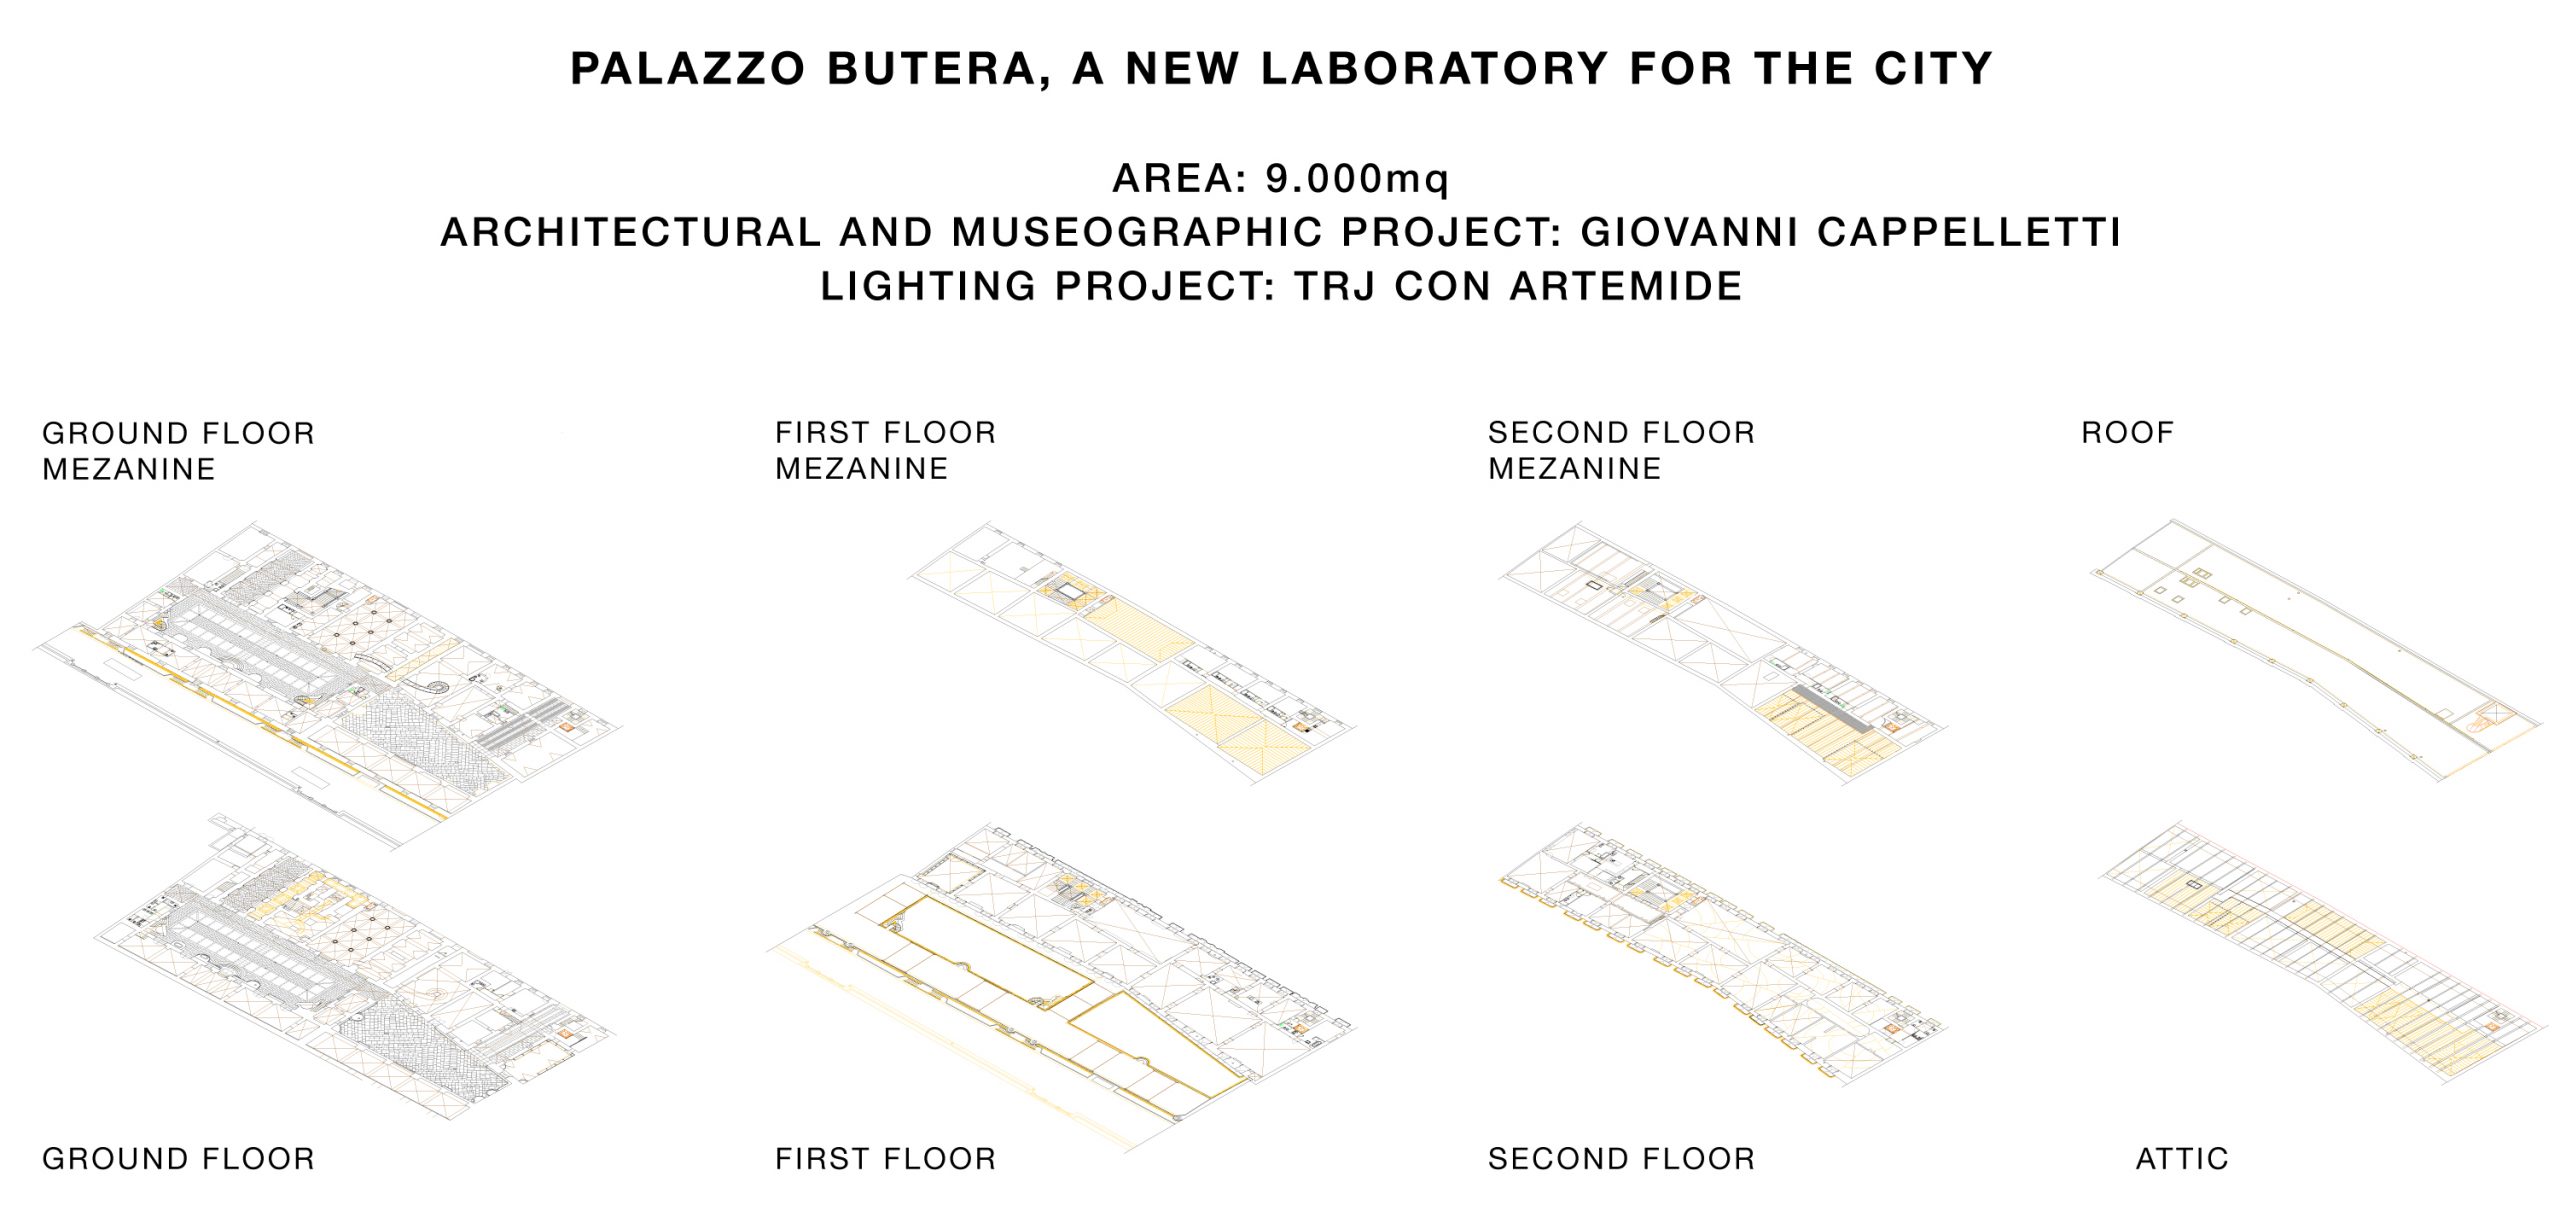 Palazzo Butera - Giovanni Cappelletti Project